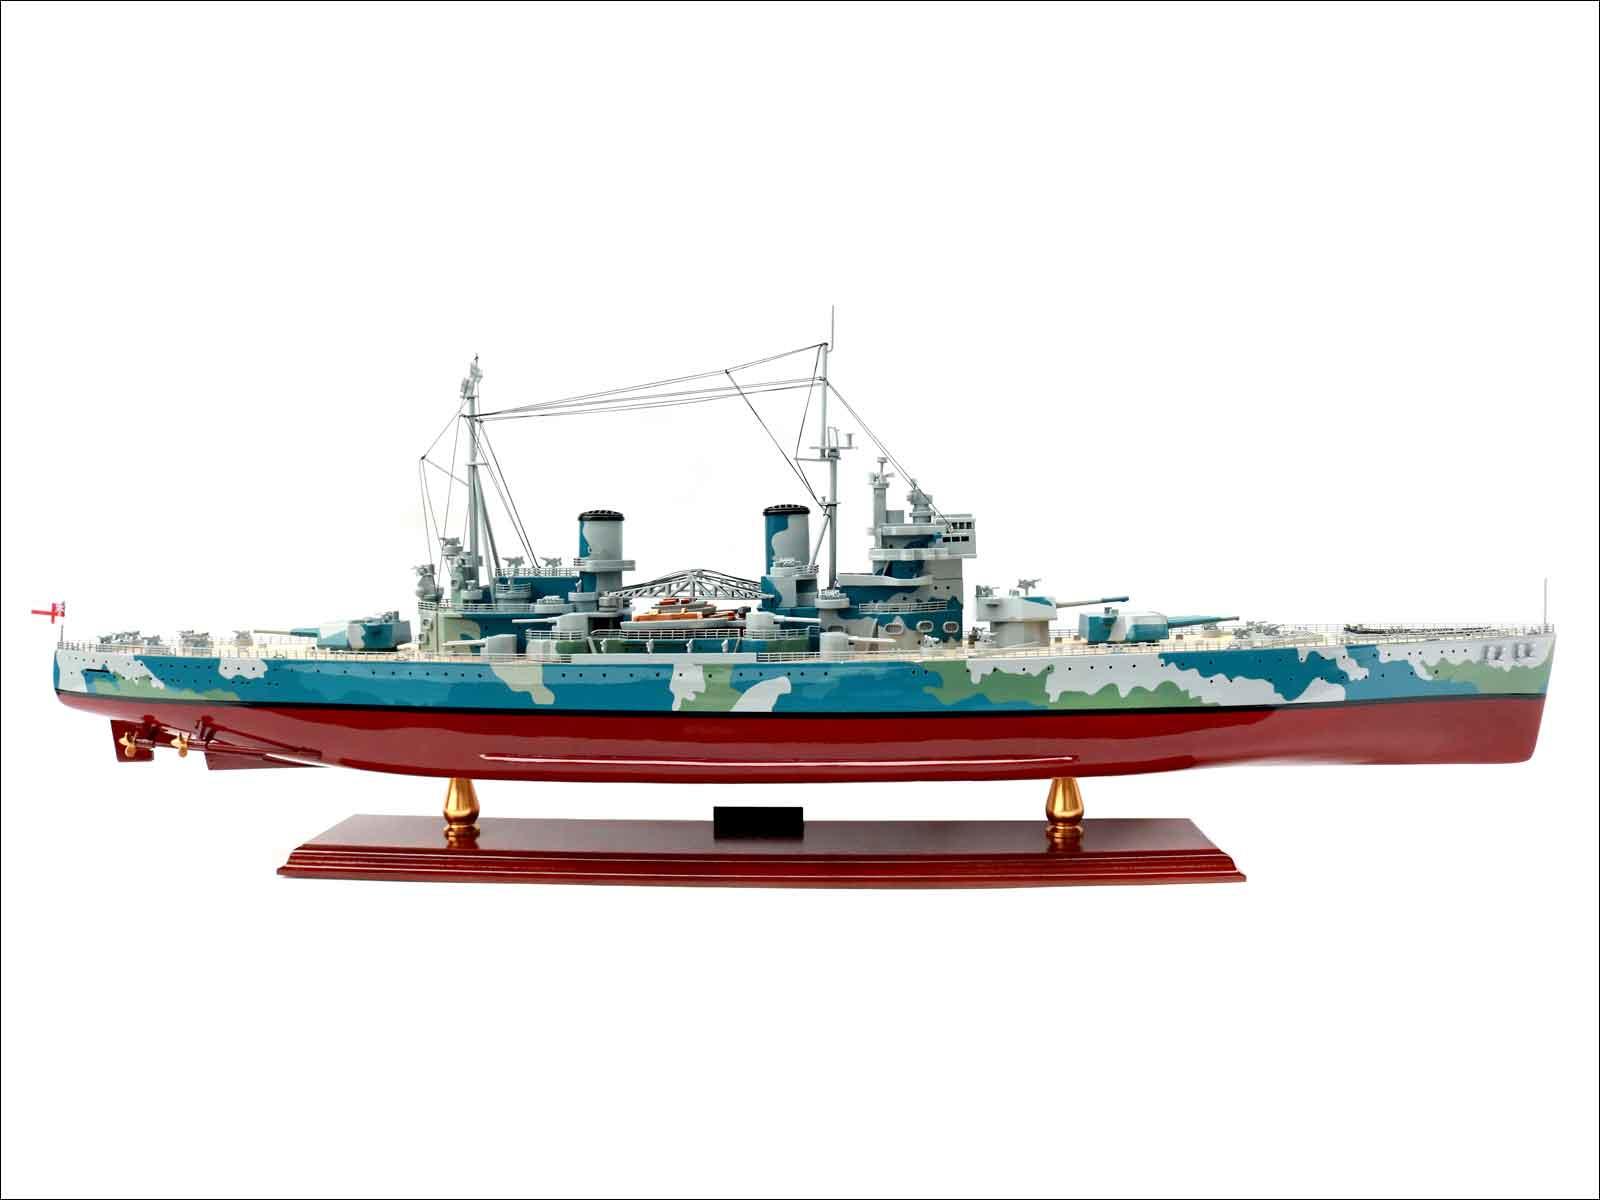 Fully built battleship model for display